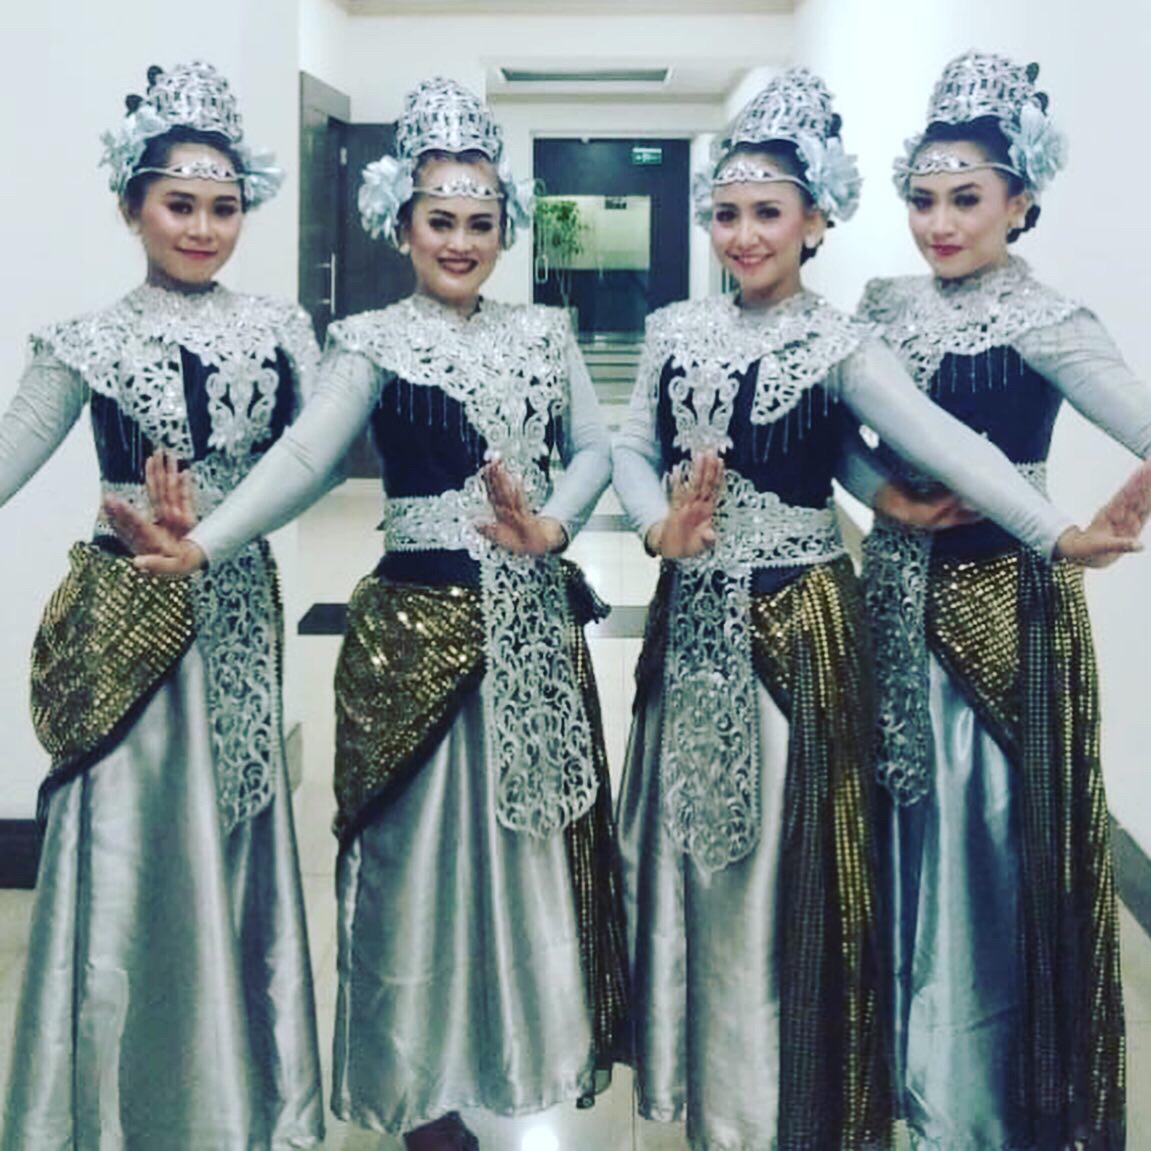 インドネシア舞踊